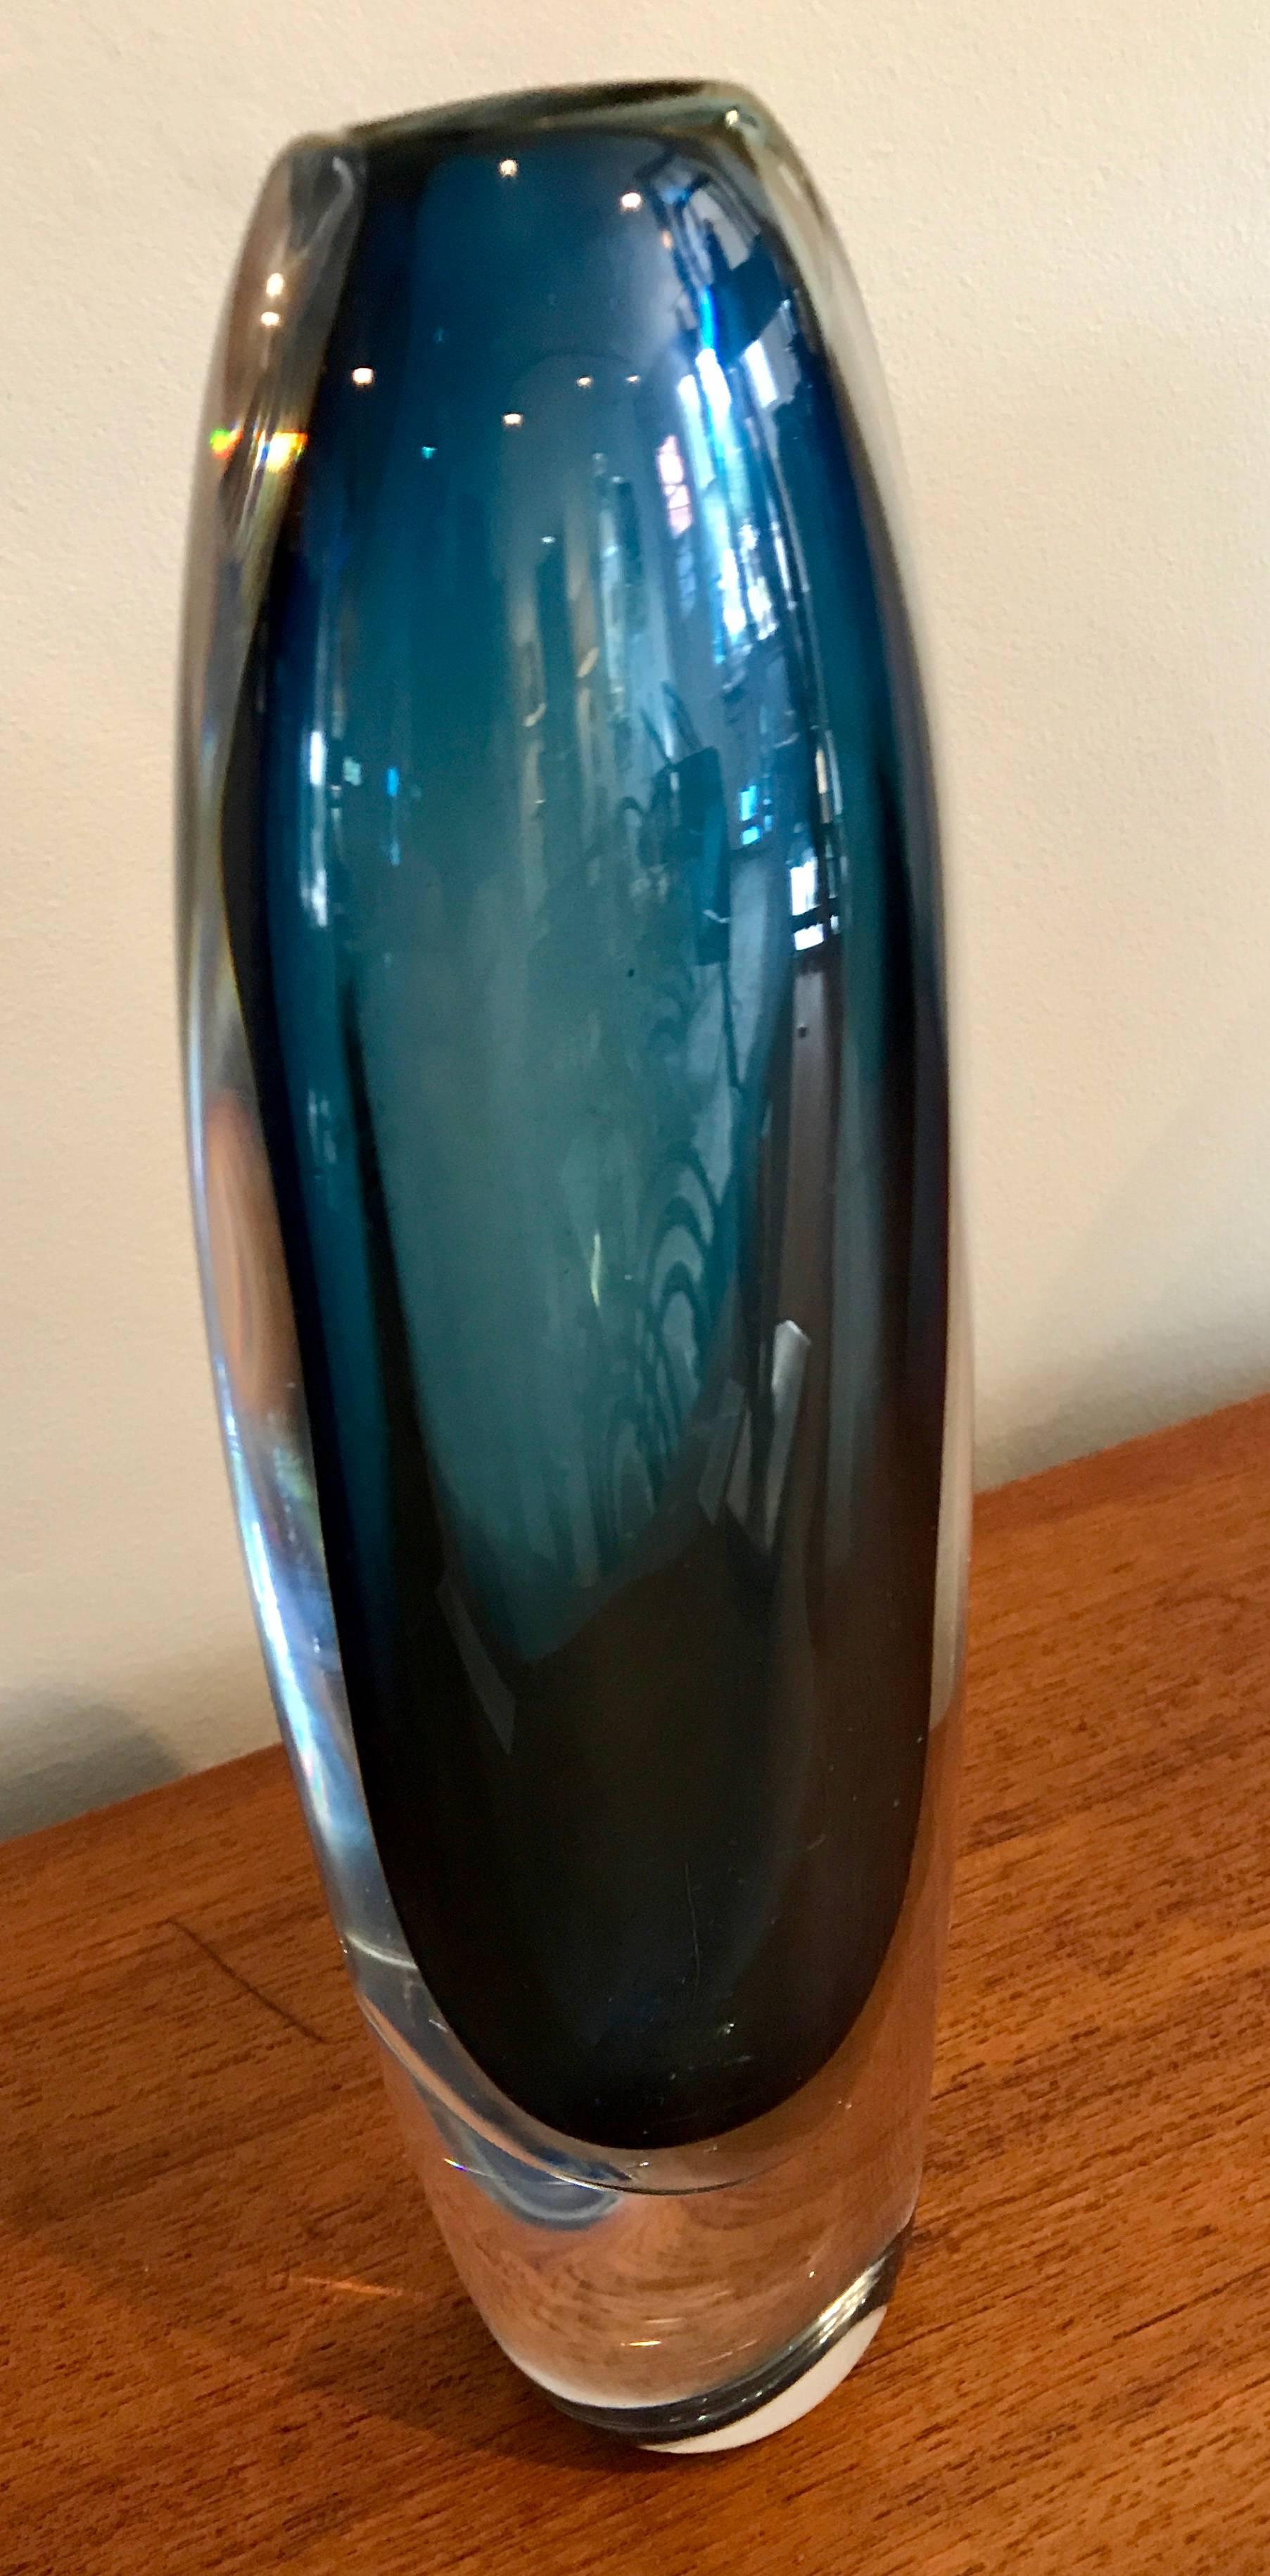 Stunning vibrant blue vase by Vicke Lindstrand for Kosta Boda, Sweden. Original label and signed.